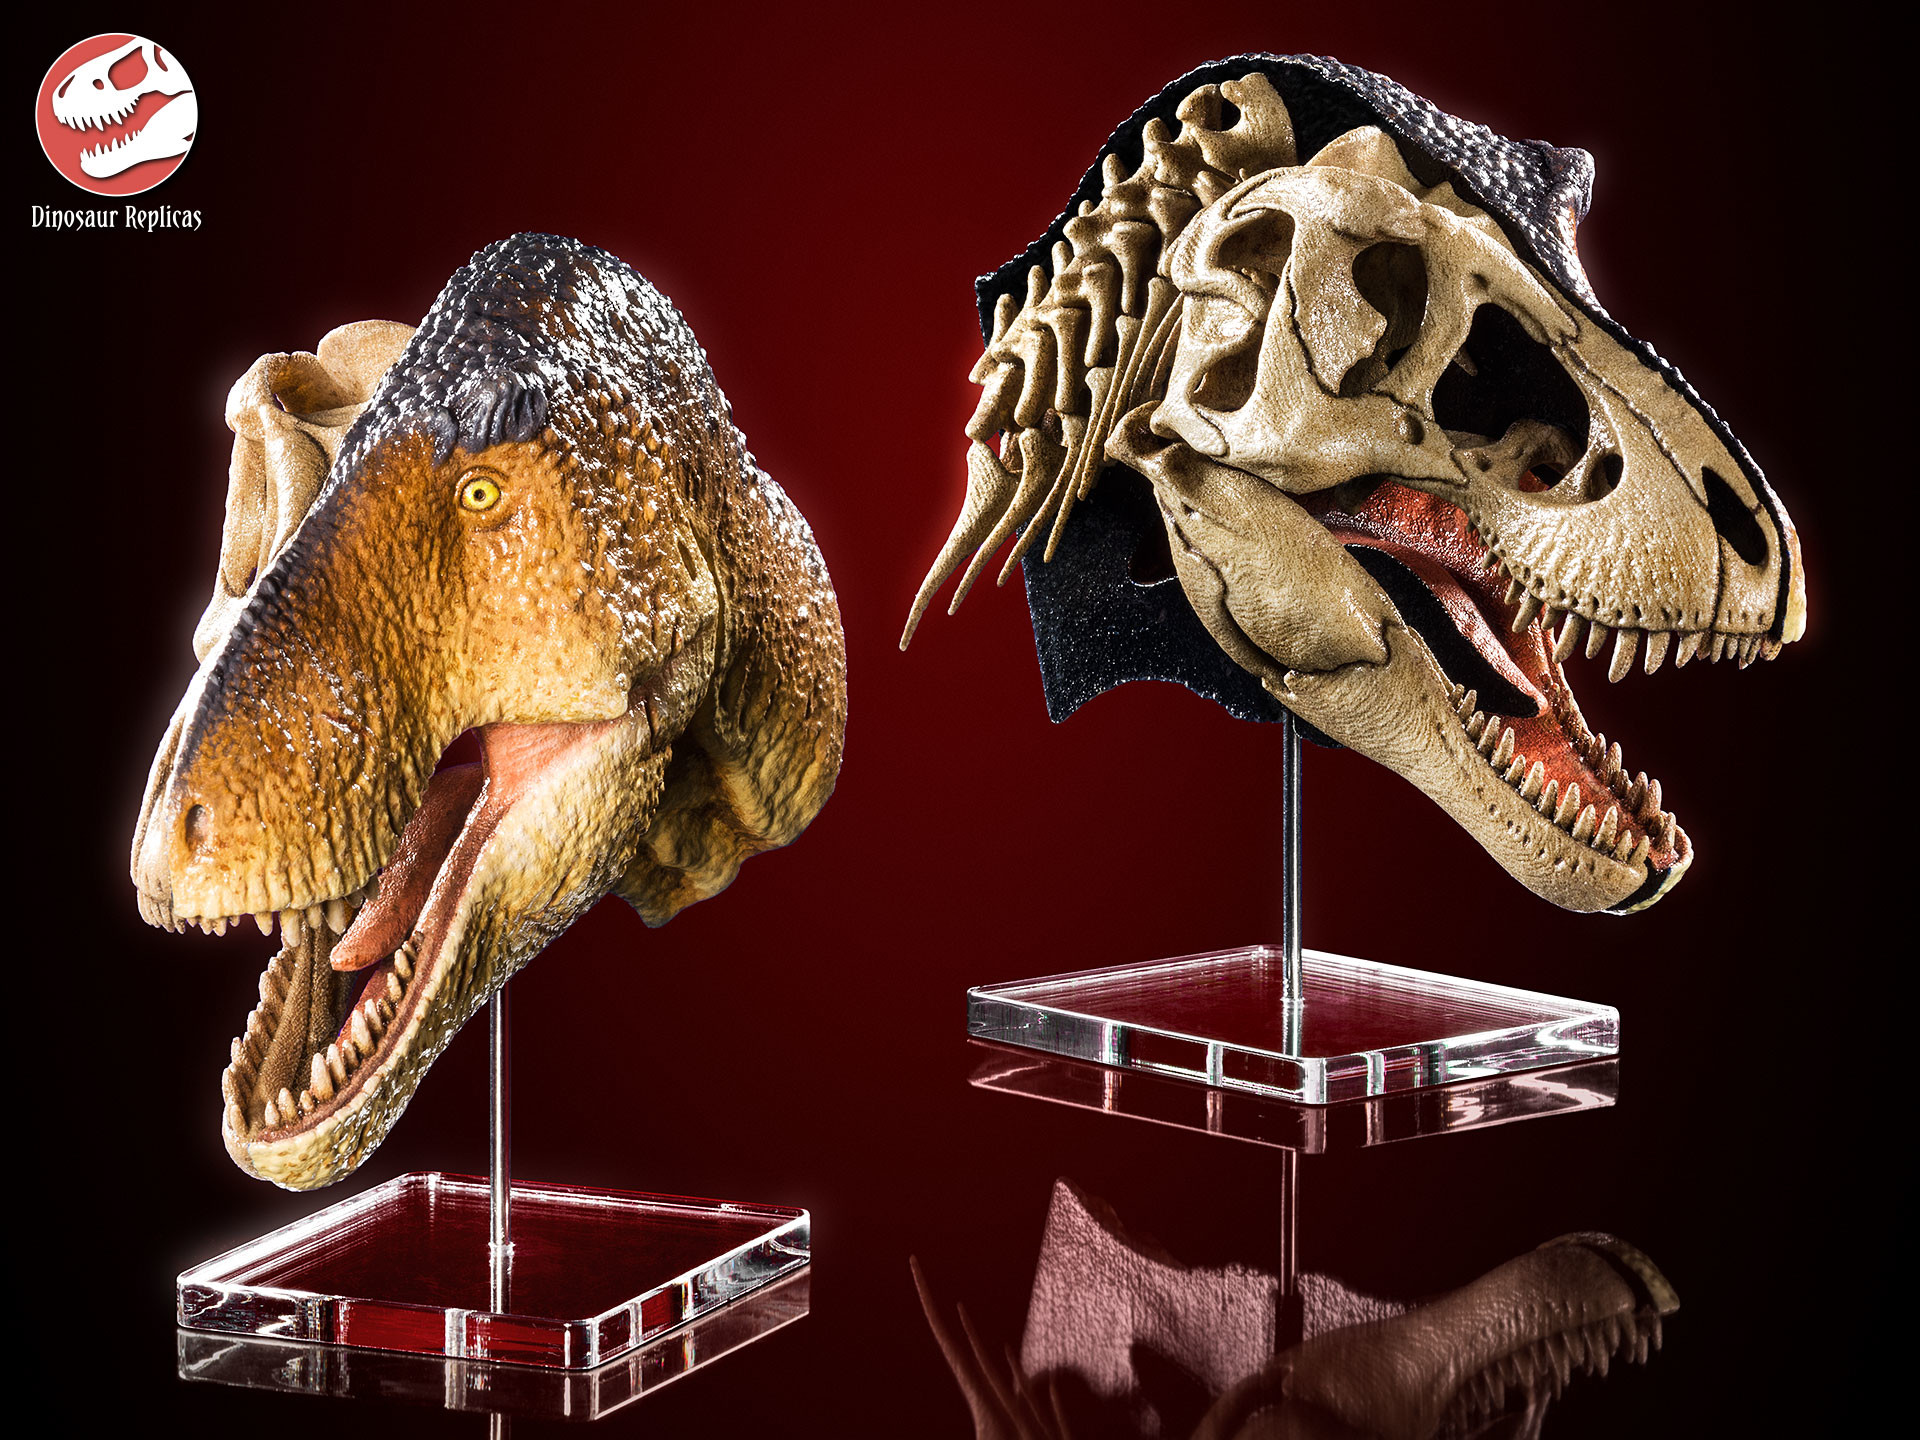 dinosaur-replicas-dual-rex-hex-01a.jpg?1